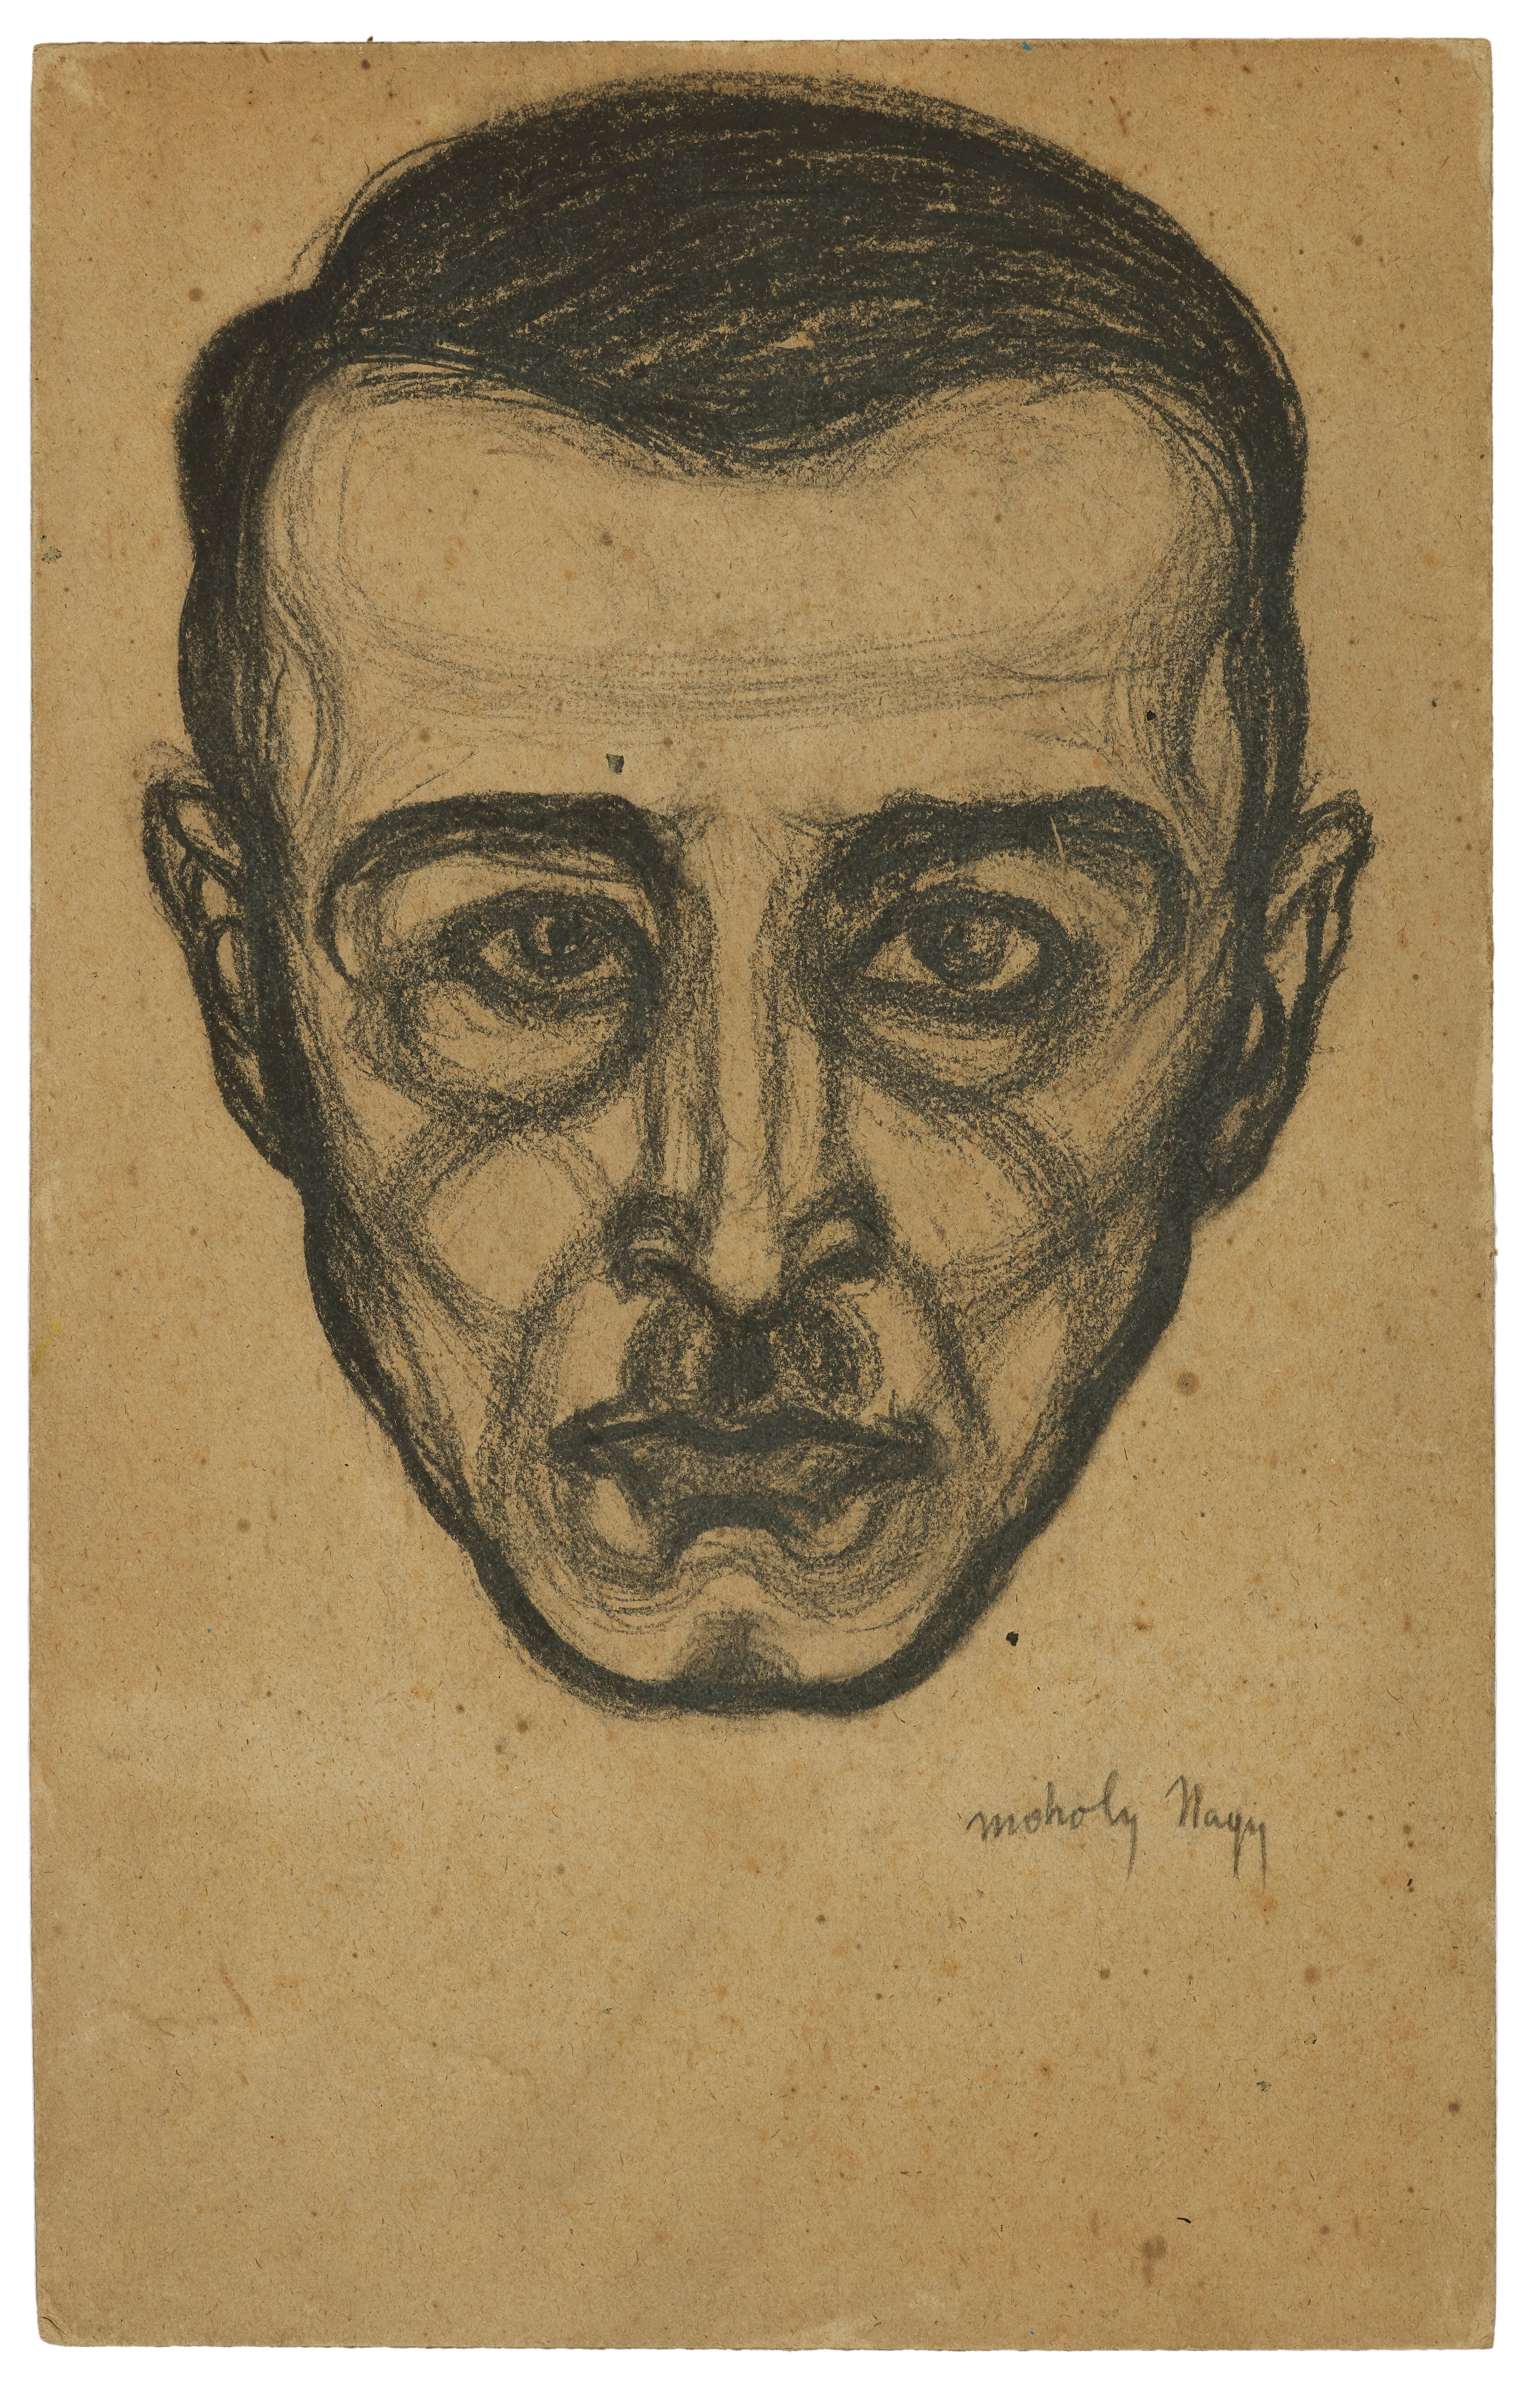 László Moholy-Nagy Portrait – Porträt eines Mannes, eine expressionistische Zeichnung von Lszl Moholy-Nagy